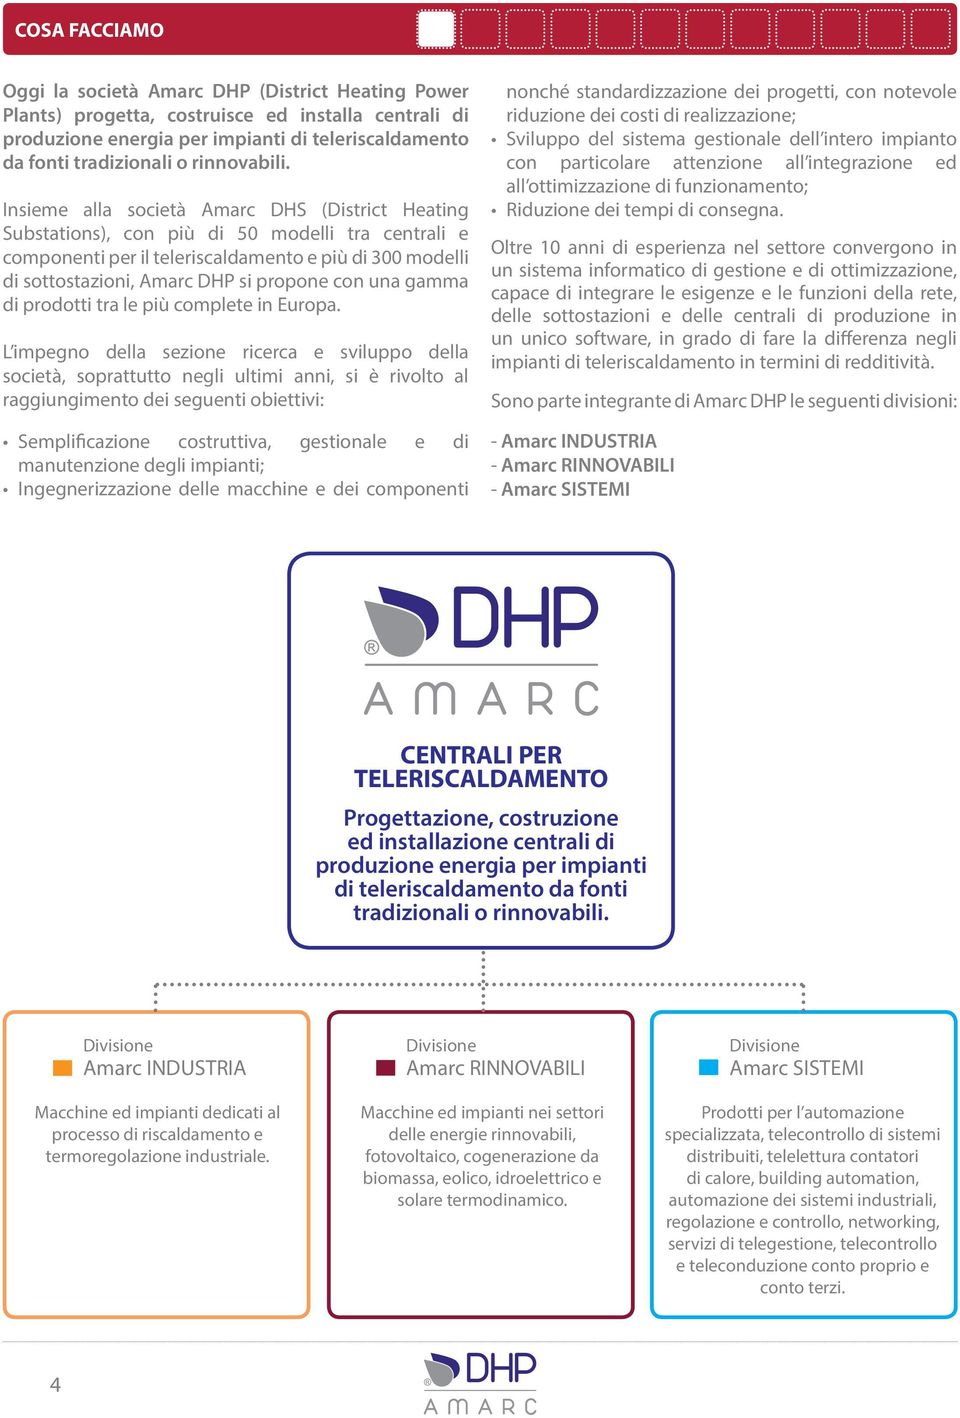 Insieme alla società Amarc DHS (District Heating Substations), con più di 50 modelli tra centrali e componenti per il teleriscaldamento e più di 300 modelli di sottostazioni, Amarc DHP si propone con